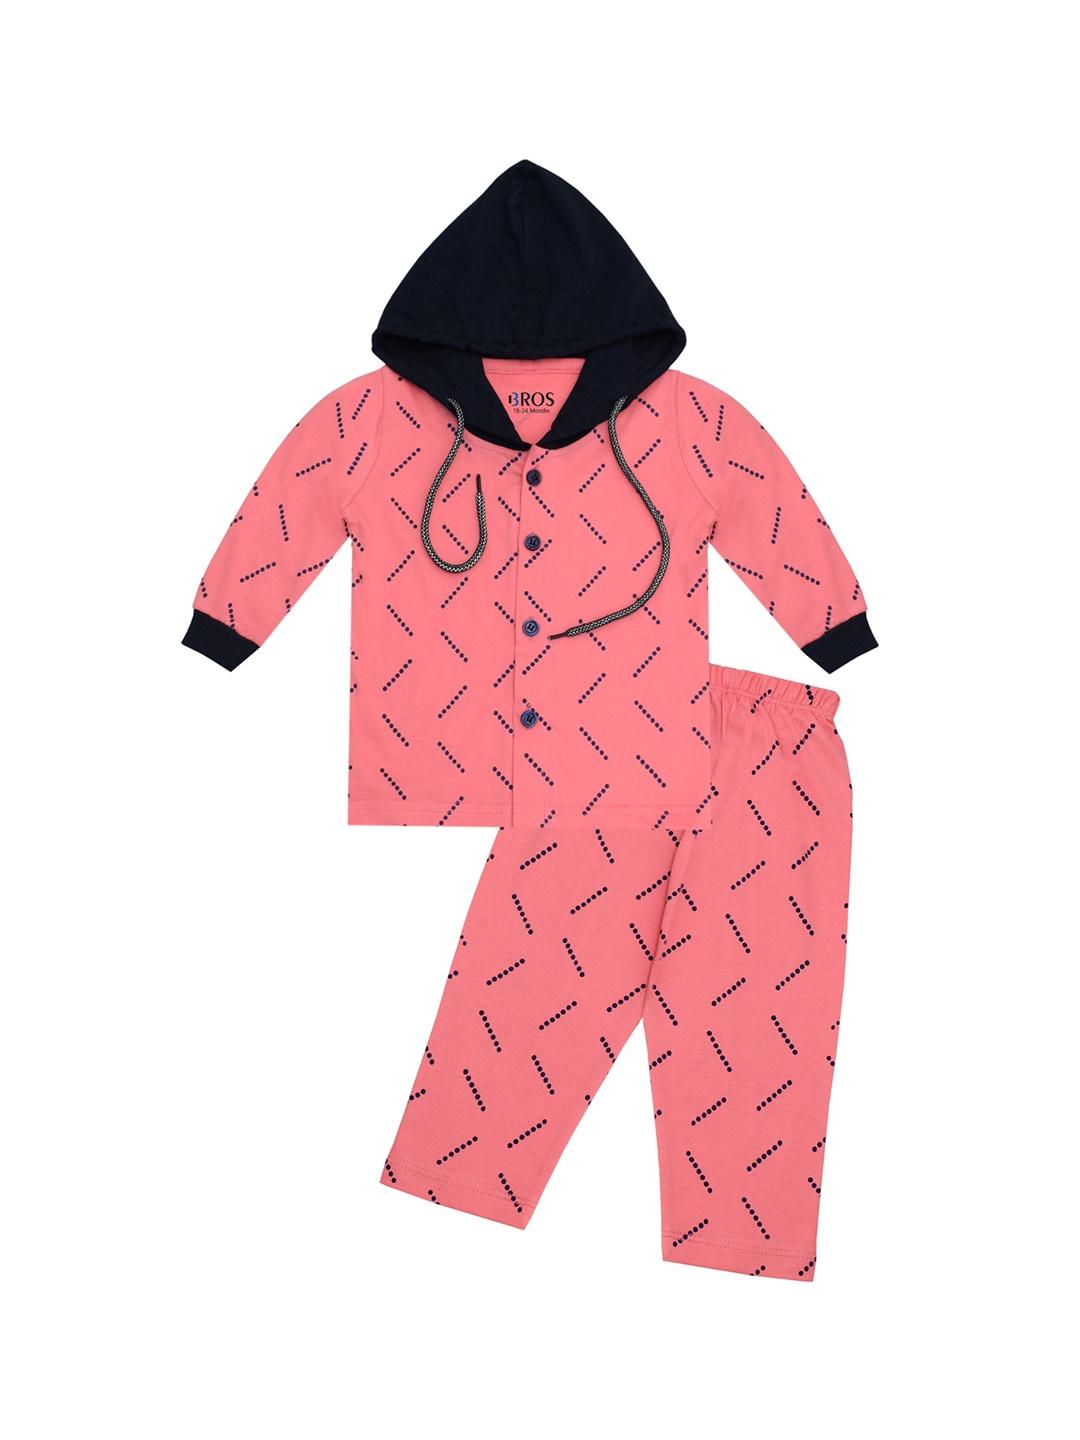 3BROS Unisex Kids Pink Clothing Set